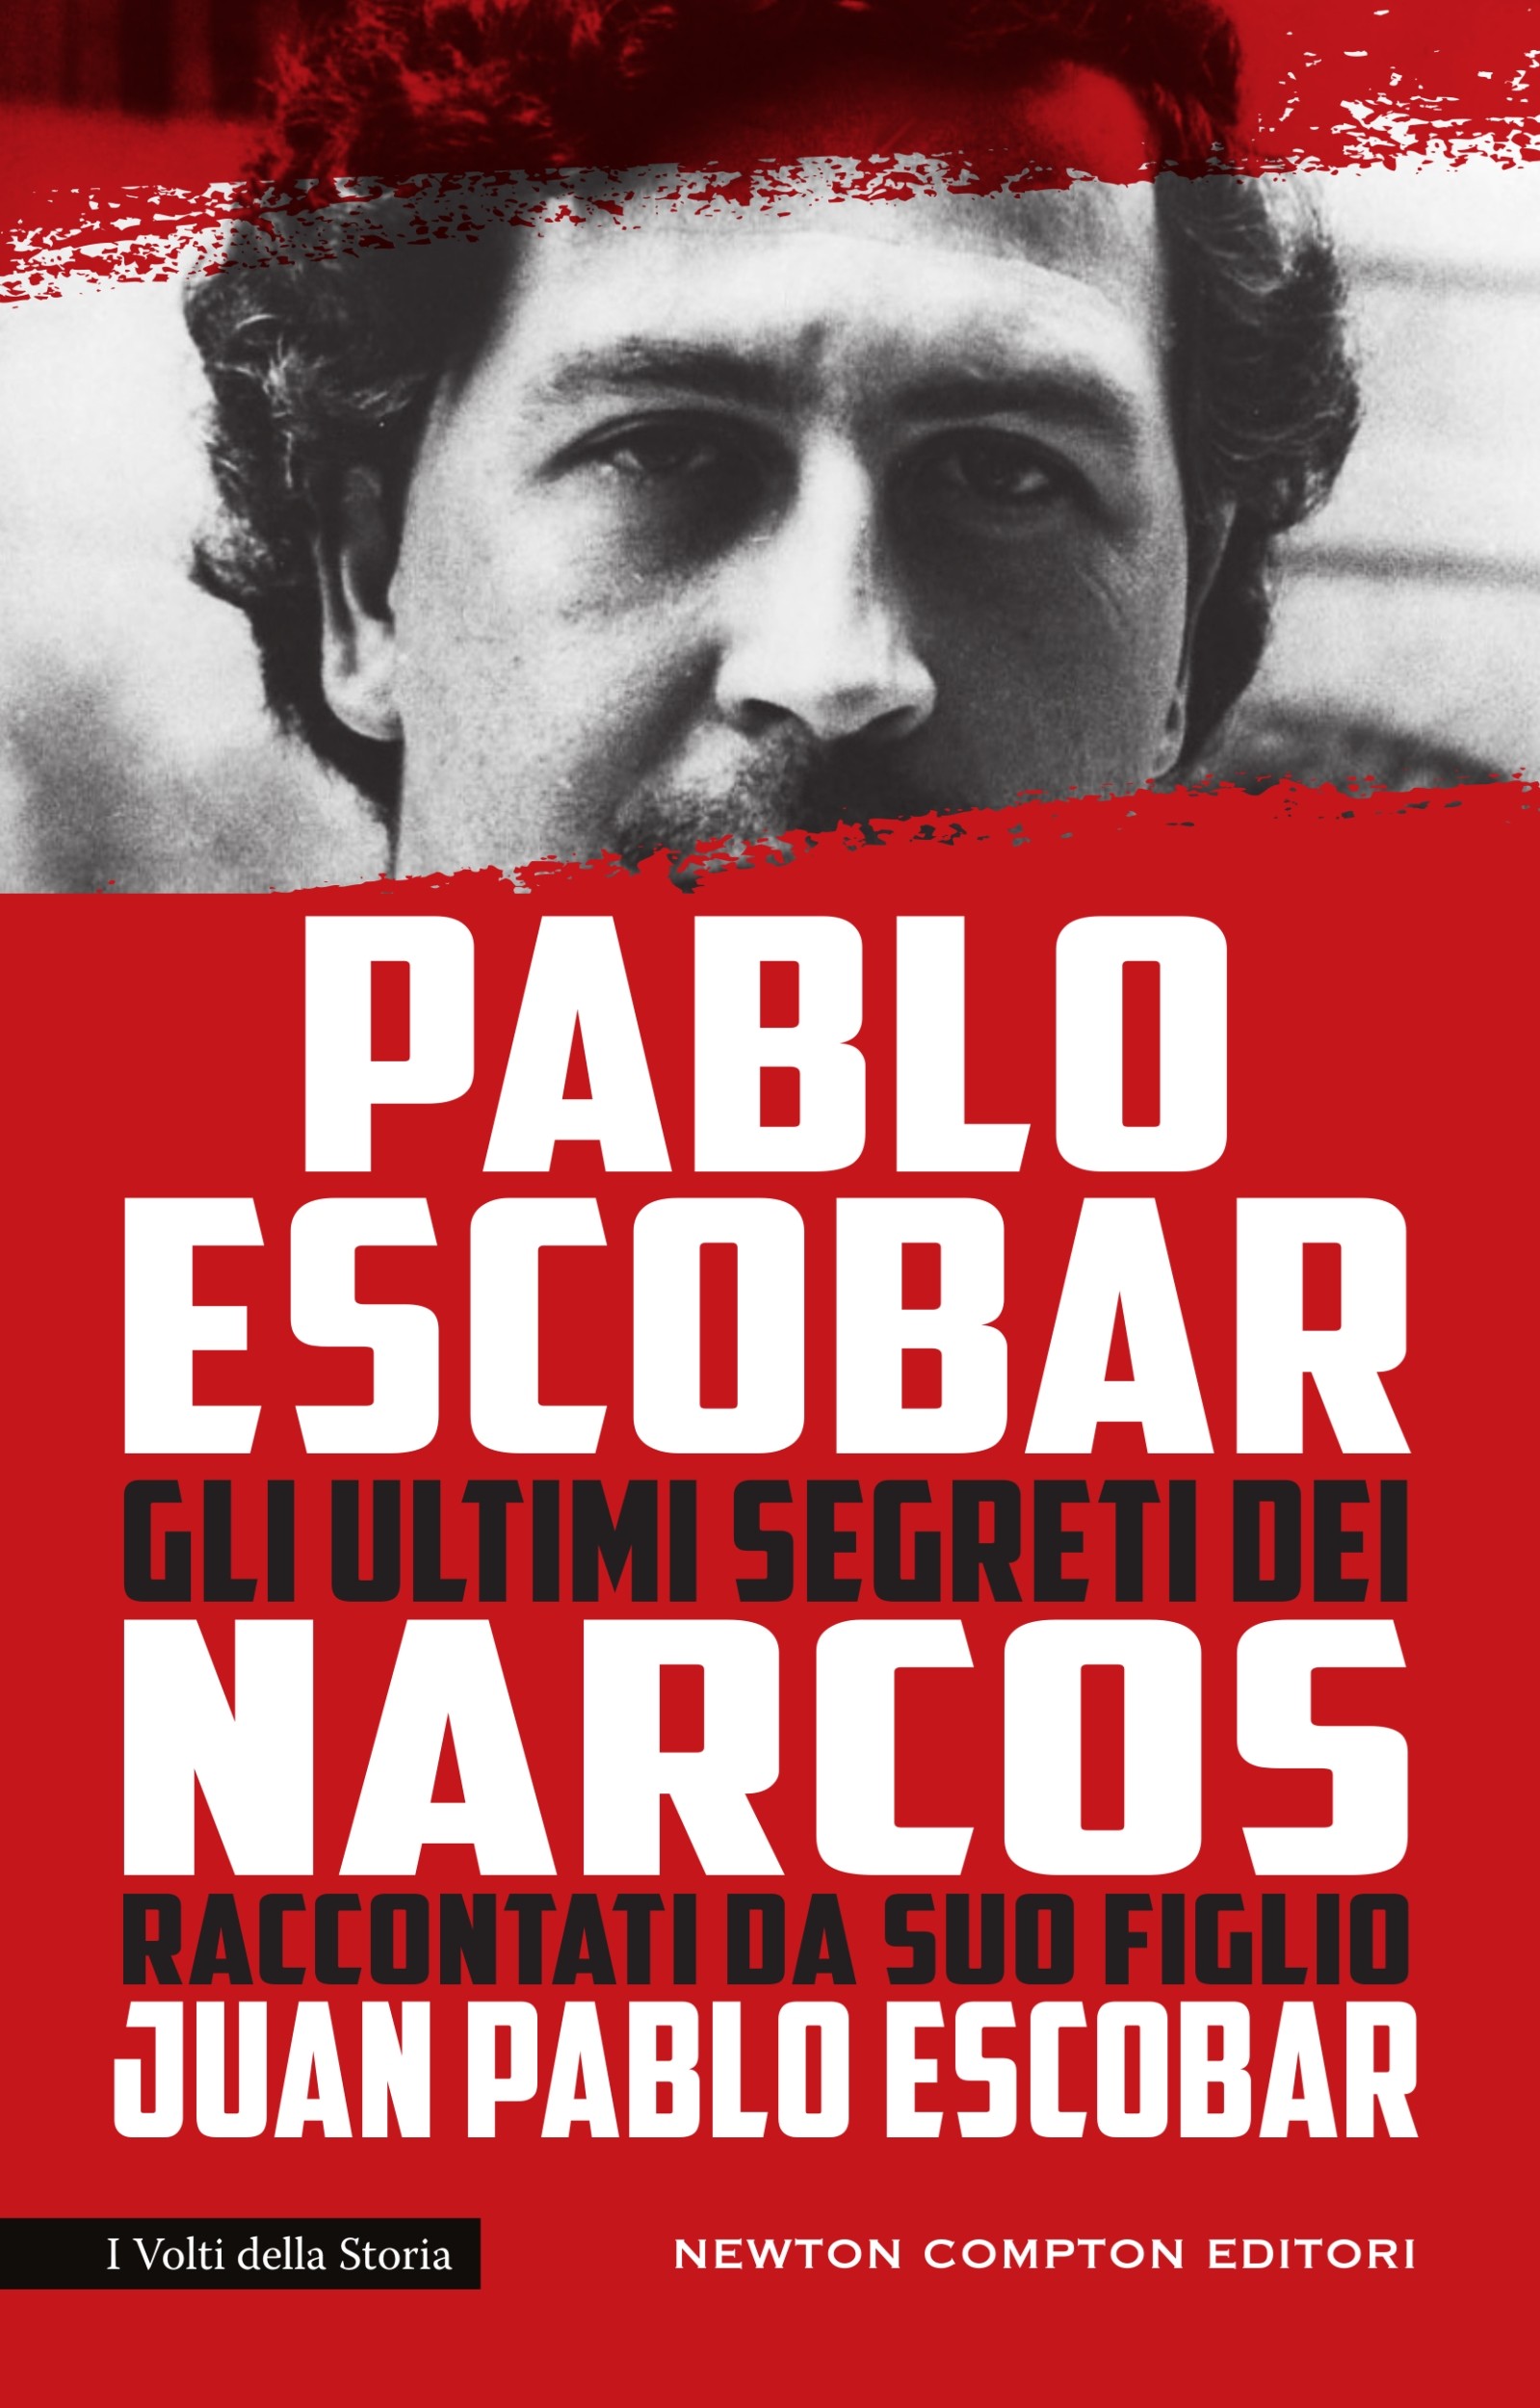 Pablo Escobar. Gli ultimi segreti dei Narcos raccontati da suo figlio - Librerie.coop